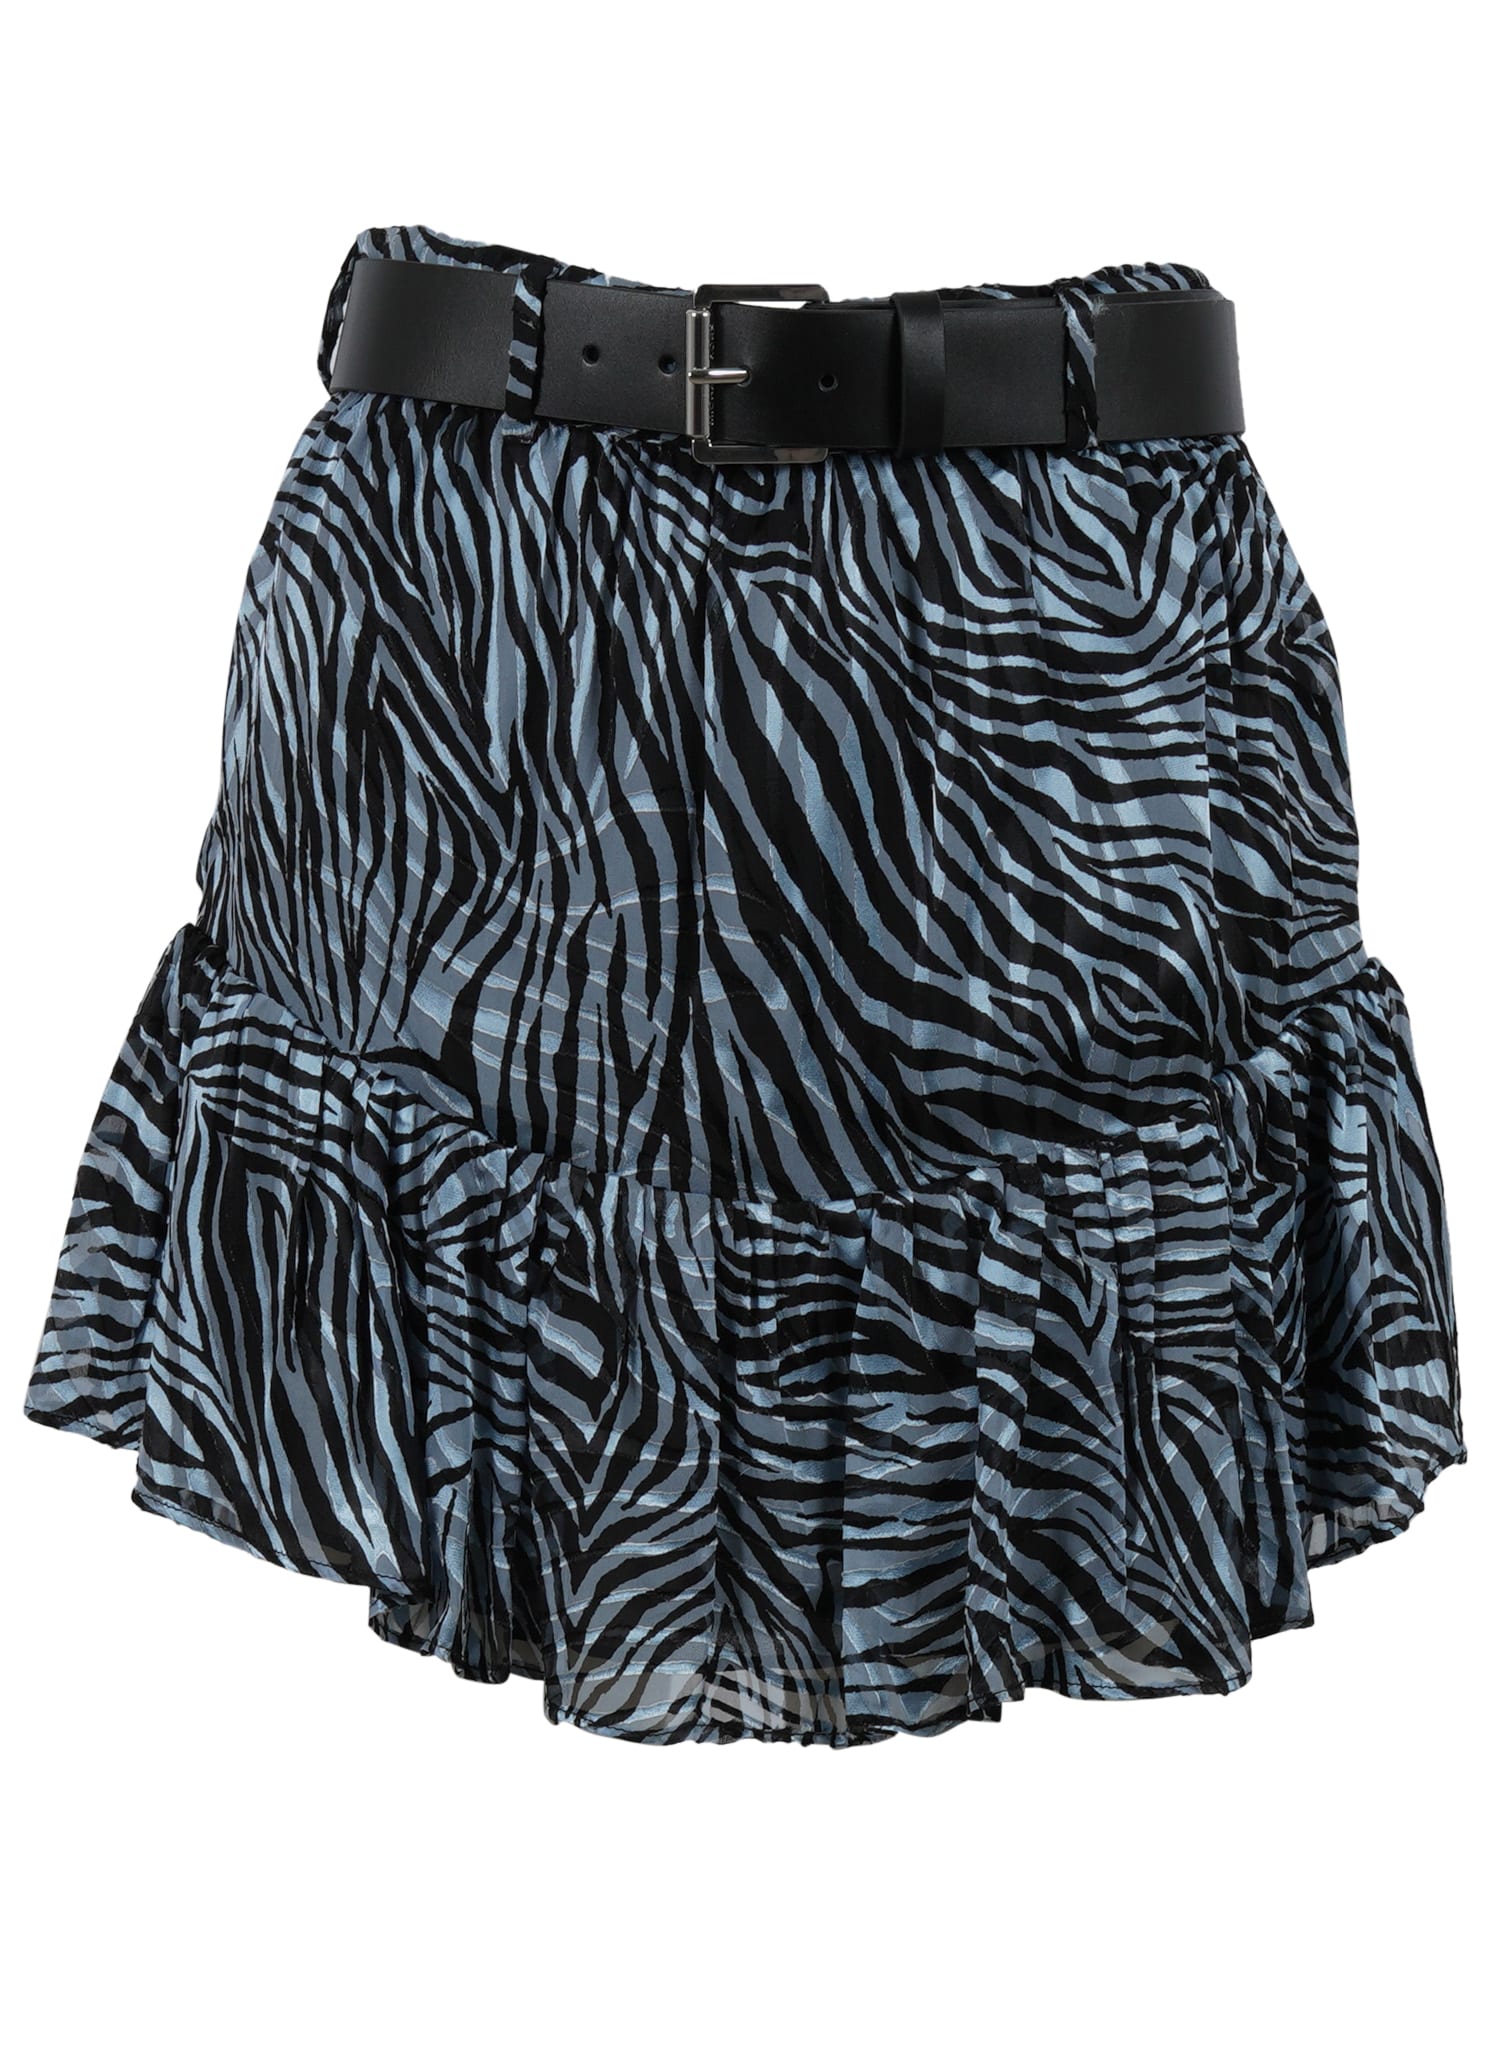 Michael Kors Zebra Mini Skirt Skirt